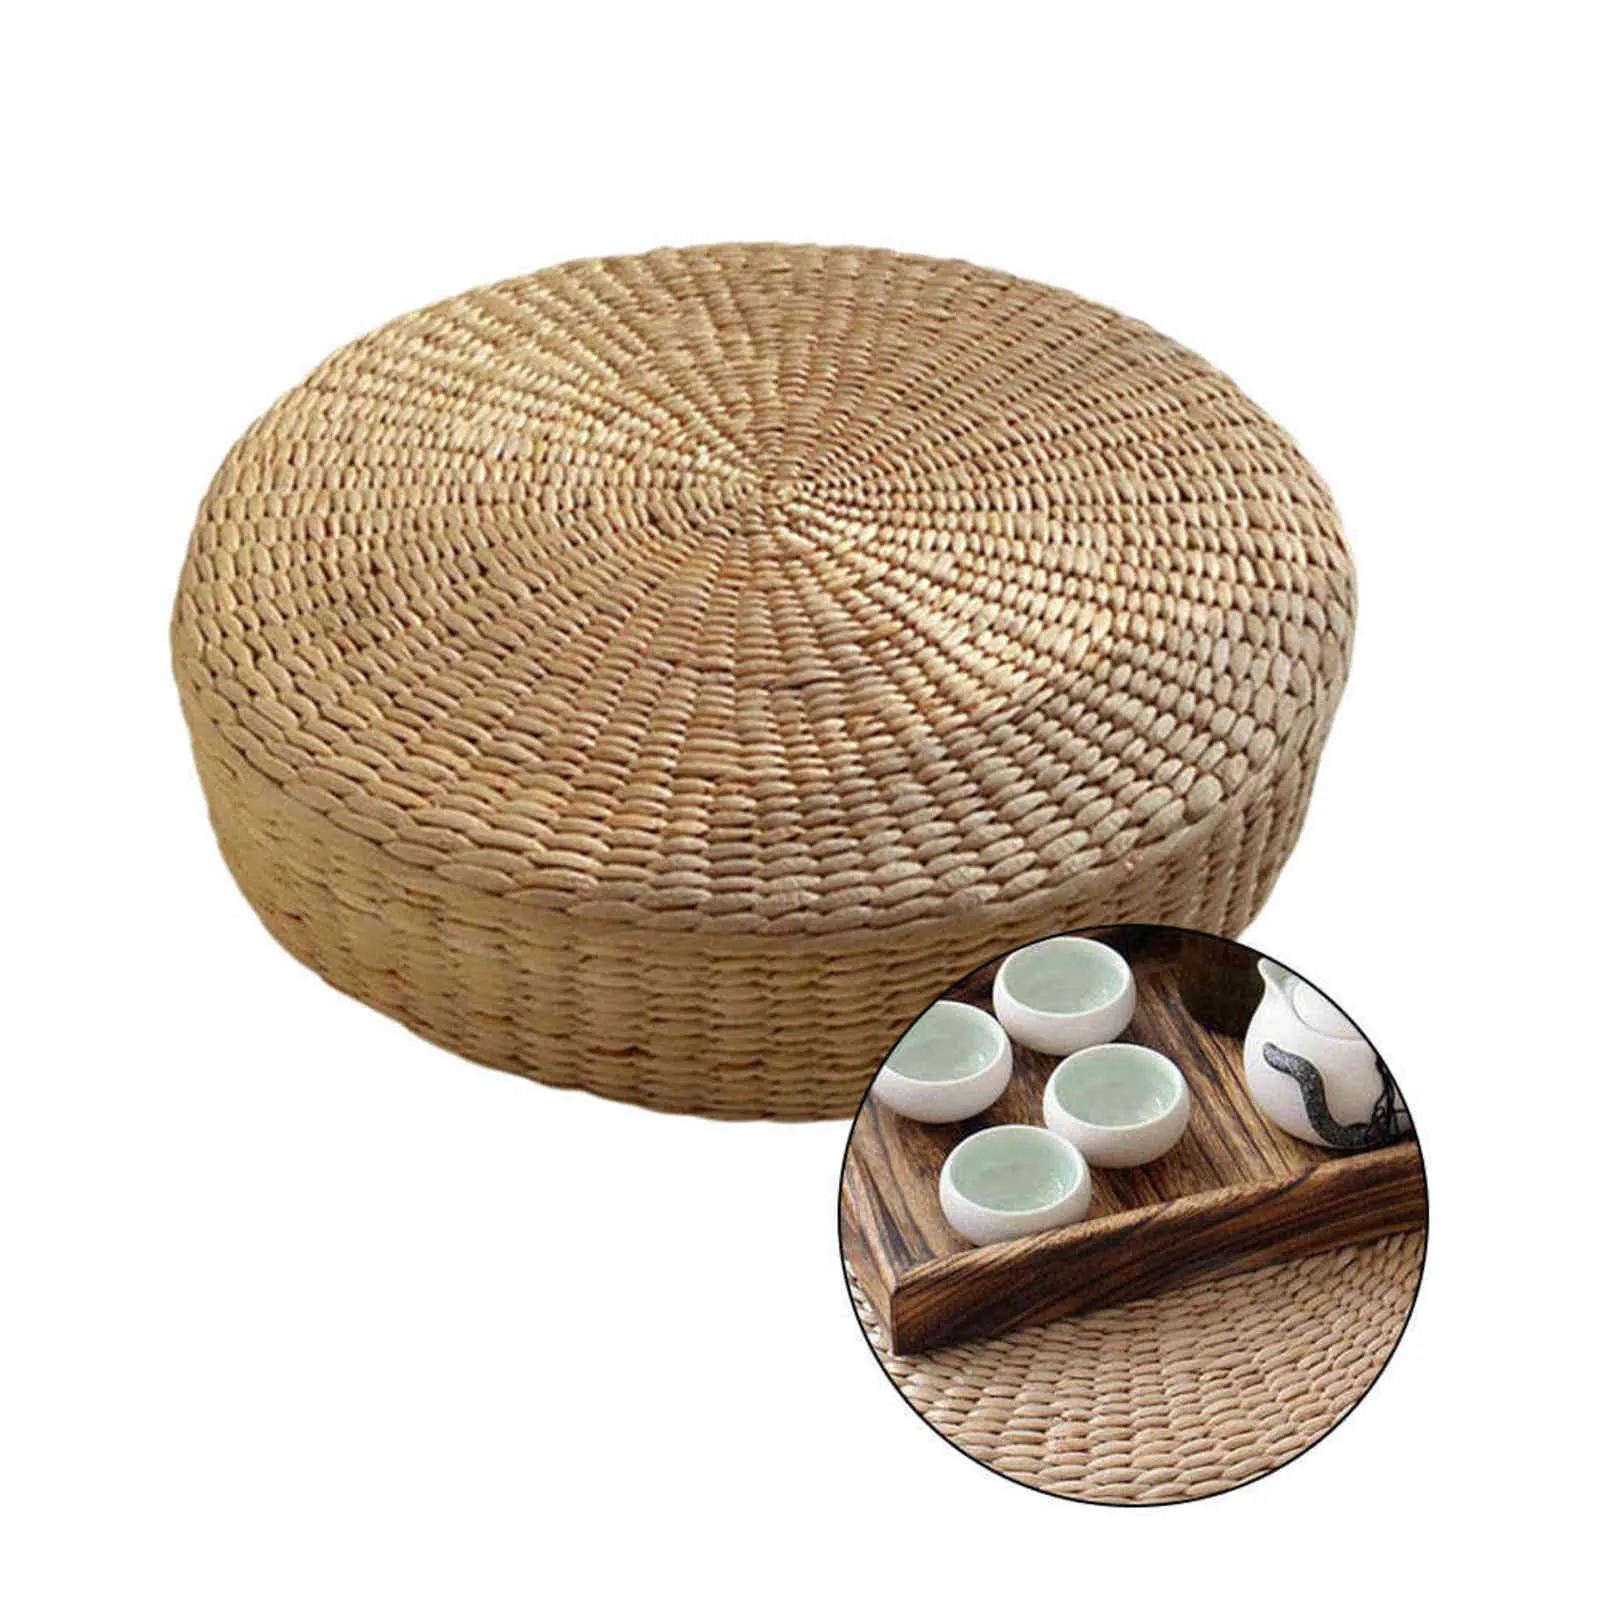 Almofada de chão ecológica redonda, almofada de palha tecida à mão, esteira de tatami, yoga, cerimônia de chá, almofada de meditação 2111105183067